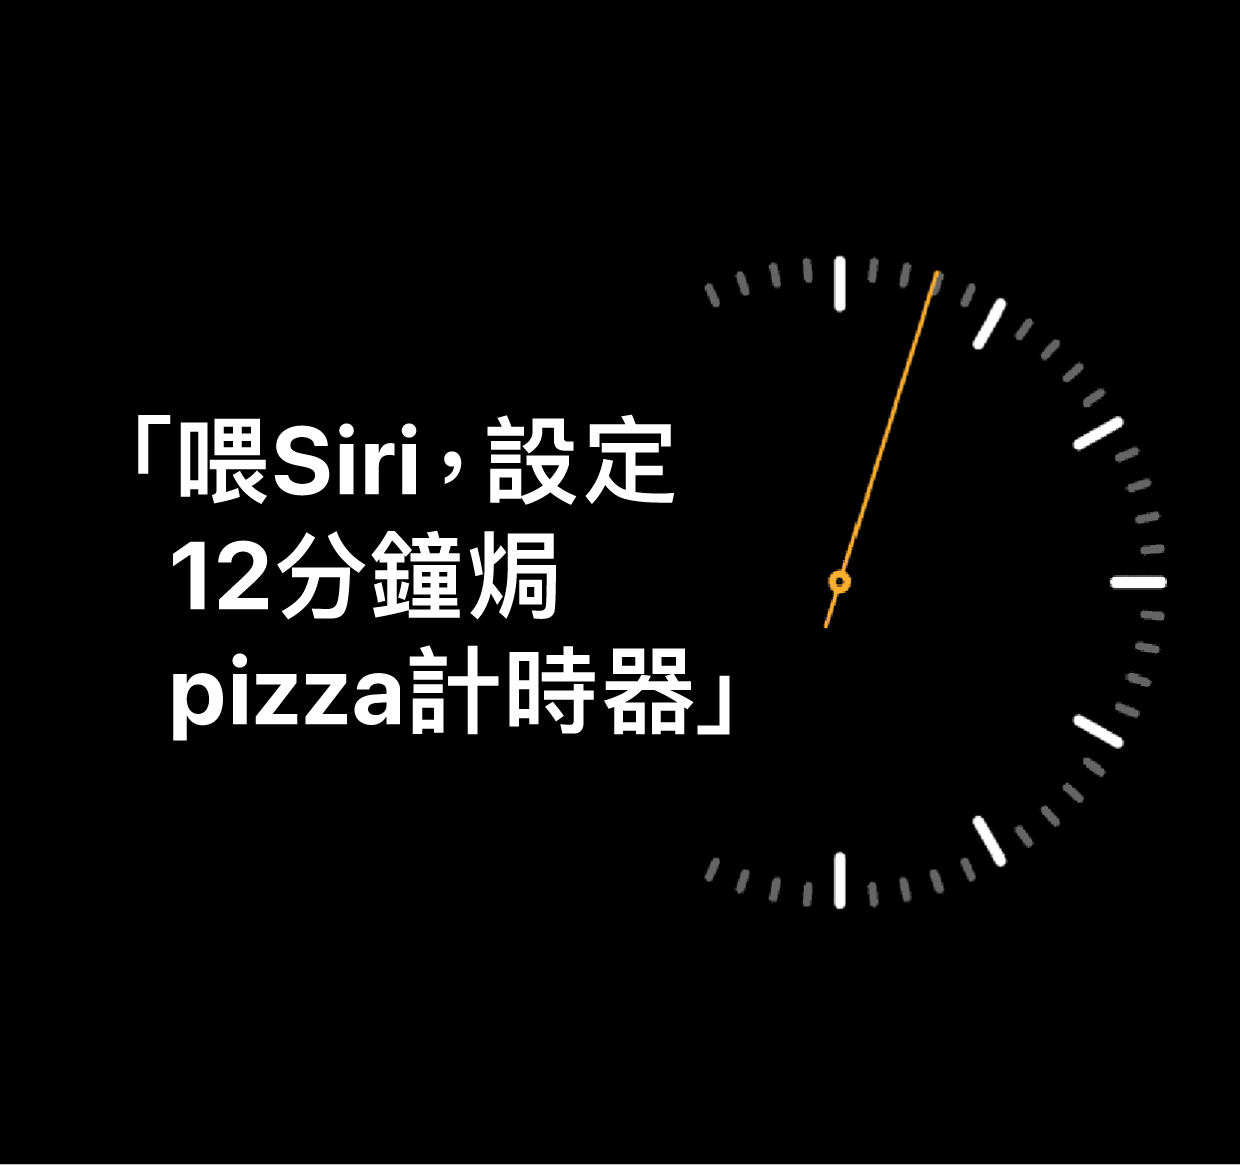 「喂 Siri，設定 12 分鐘焗 pizza 計時器」字樣的插圖